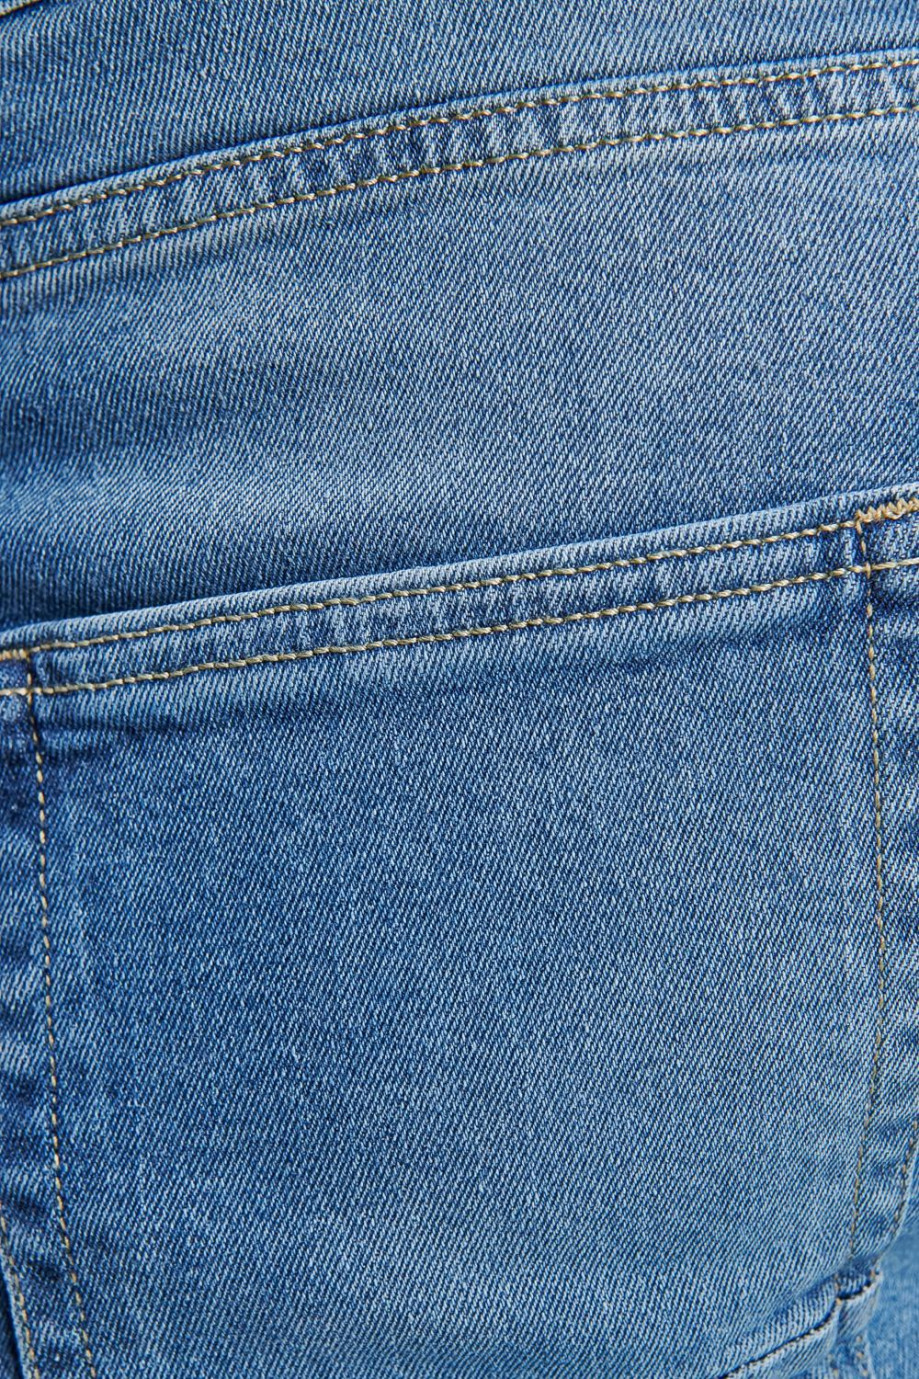 Jean carrot azul claro con rotos y deshilado en bordes inferiores